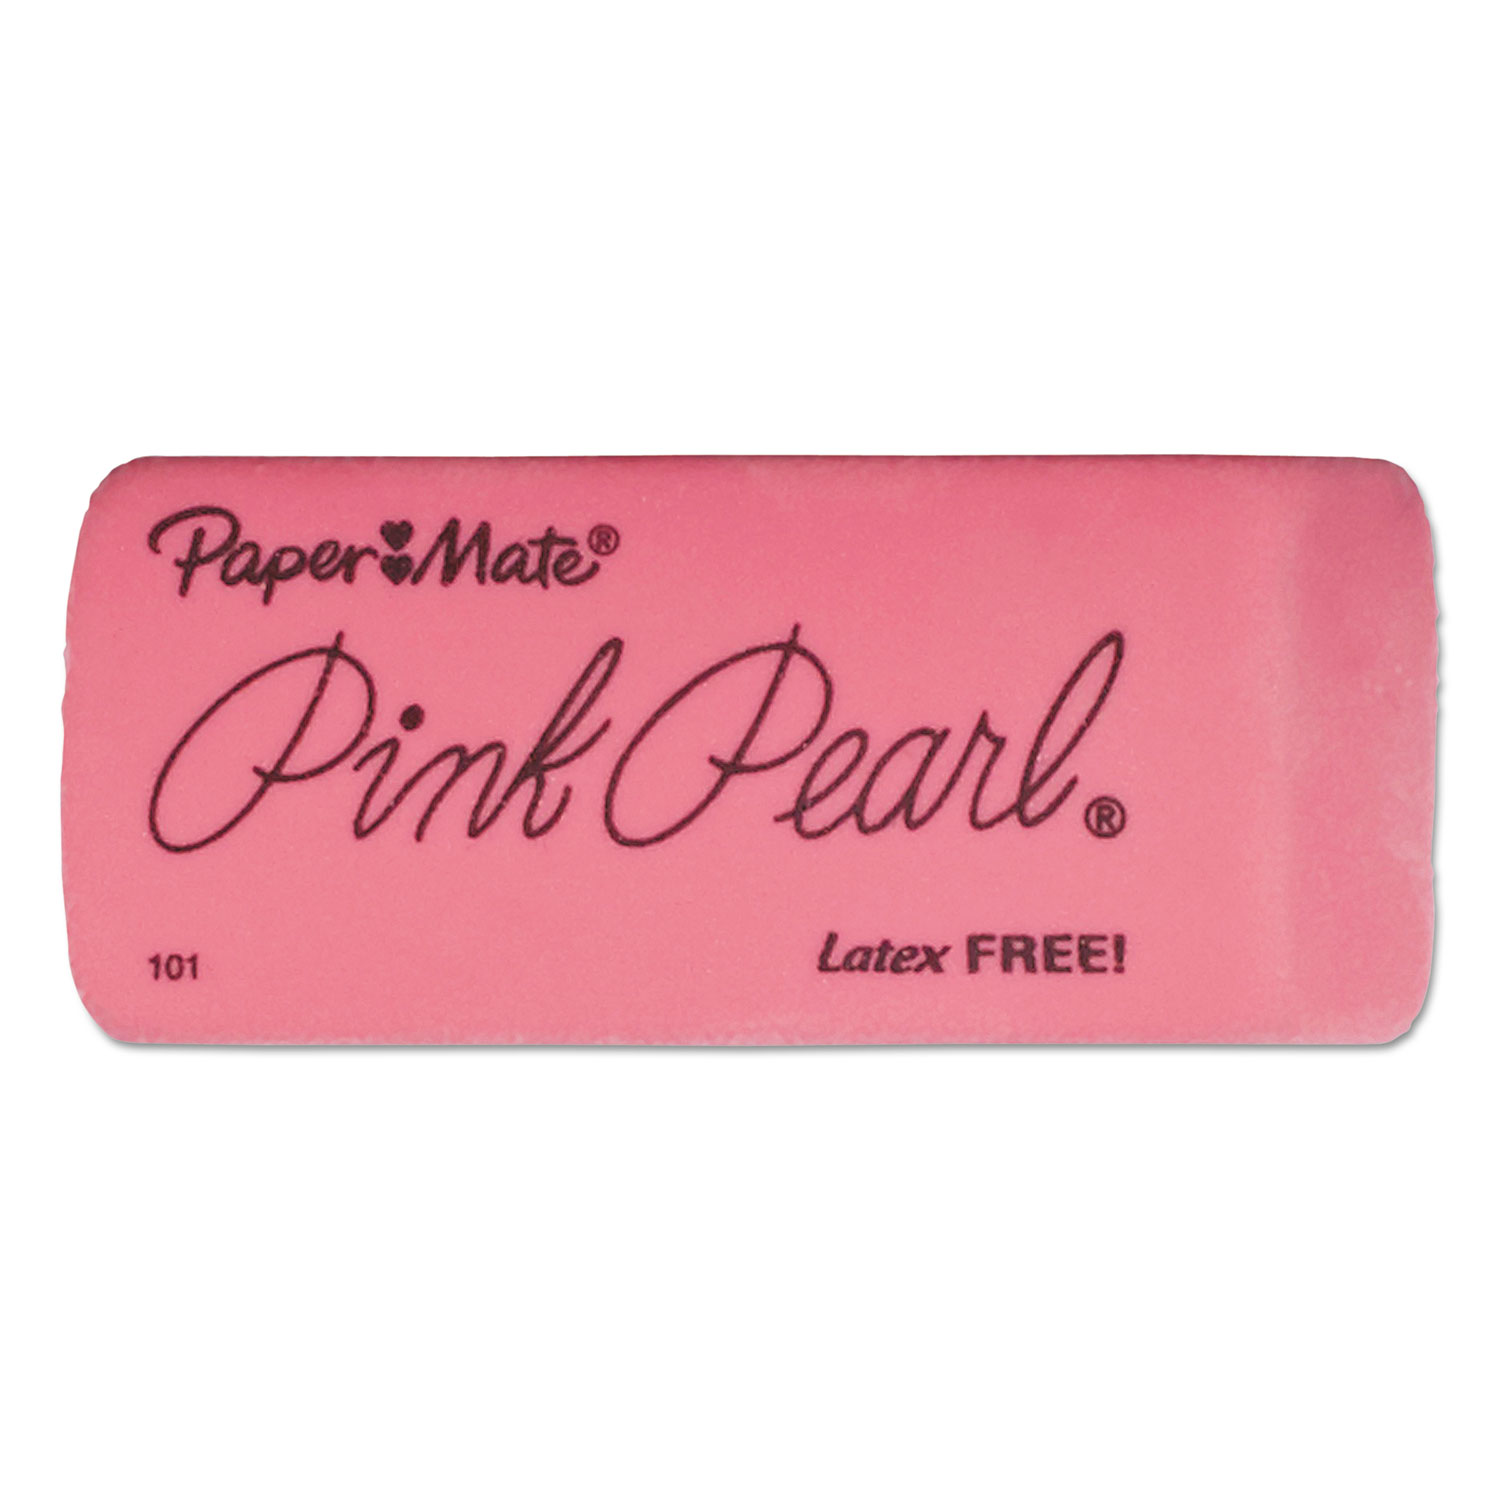  Paper Mate 70501 Pink Pearl Eraser, Rectangular, Large, Elastomer, 3/Pack (PAP70501) 